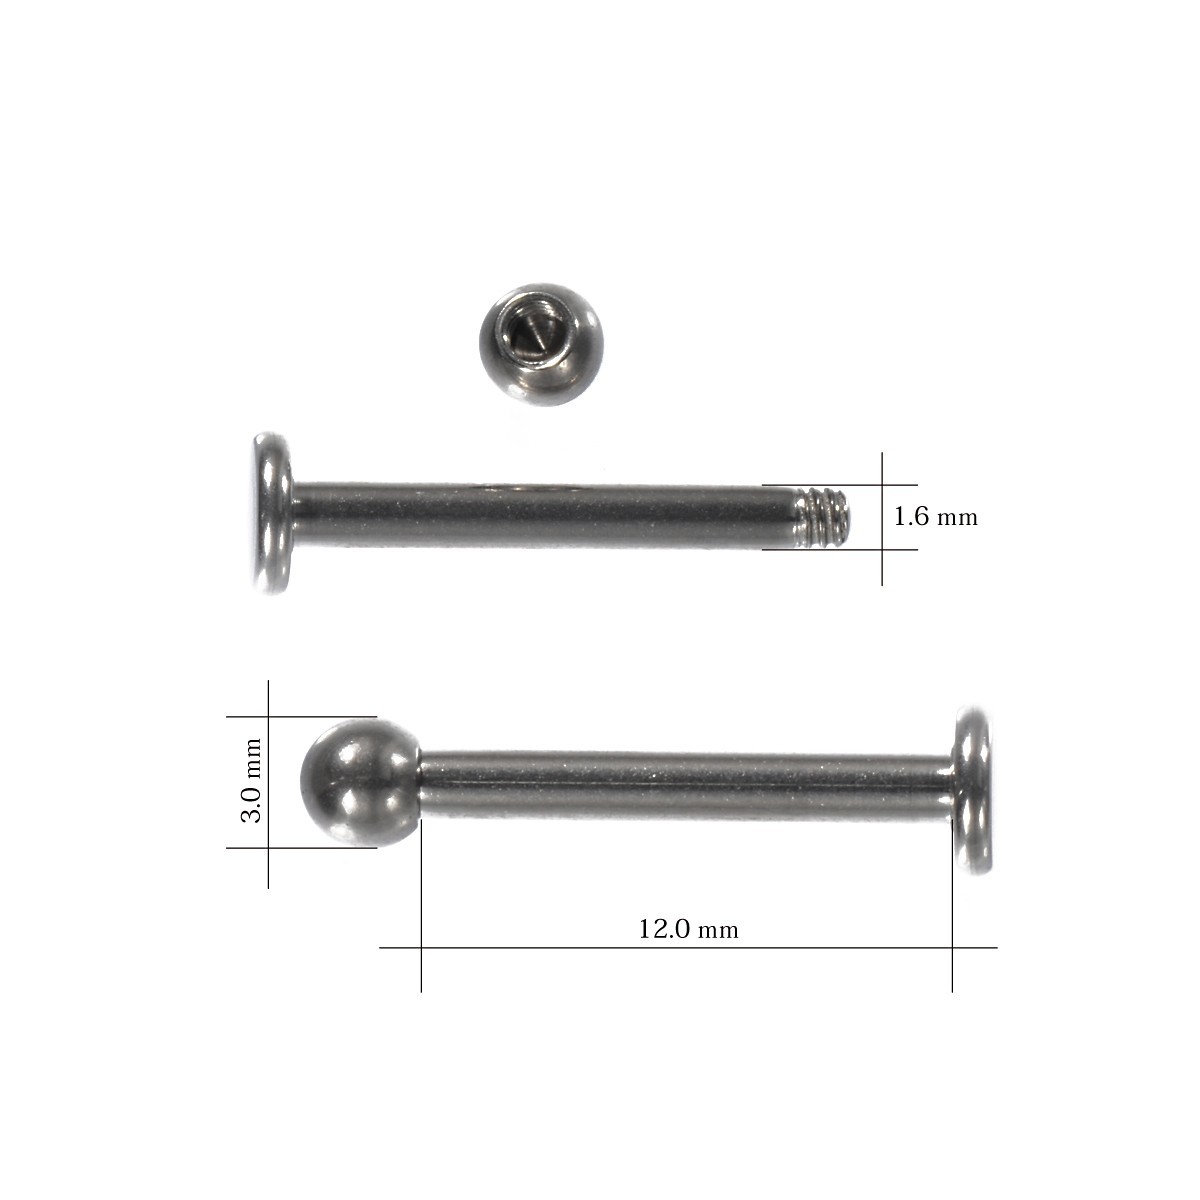 [ продажа по отдельности /1 шт ] пирсинги titanium la Brett stud стандартный 14 мера внутренний диаметр 12.0mm мяч 3.0mm диск 4.0mm серебряный цвет 